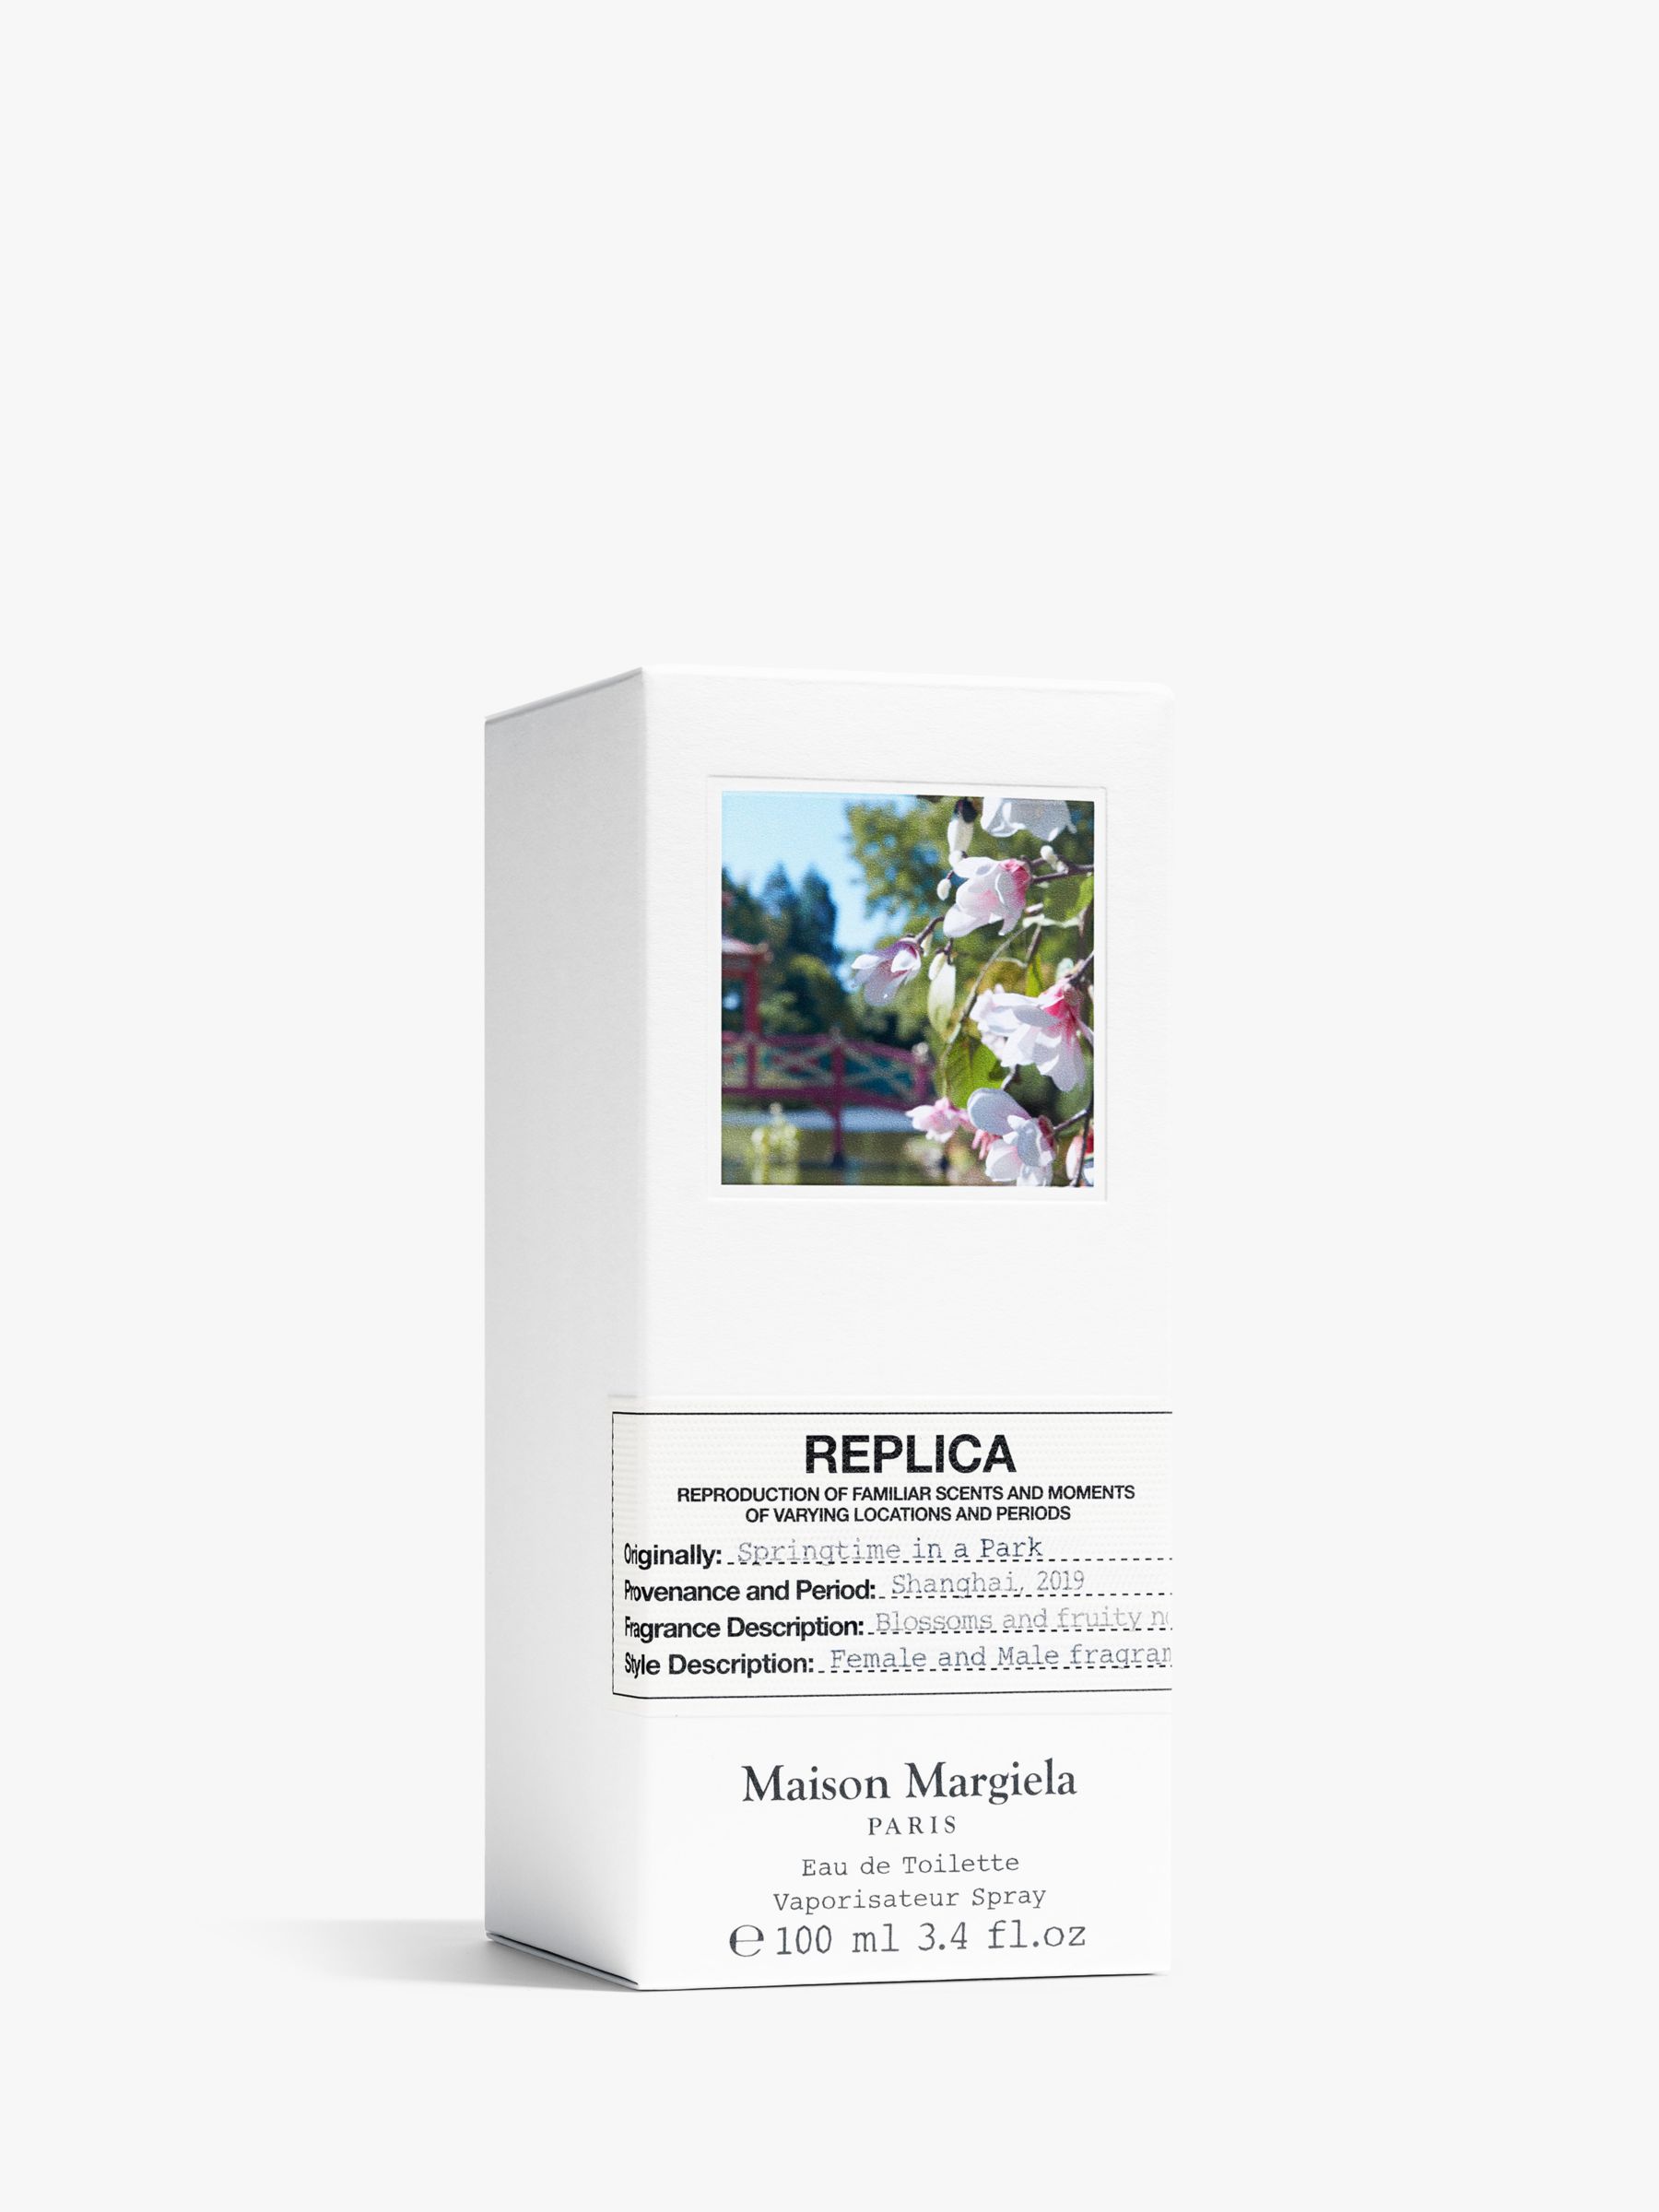 Maison Margiela Replica Springtime in a Park Eau de Toilette, 100ml